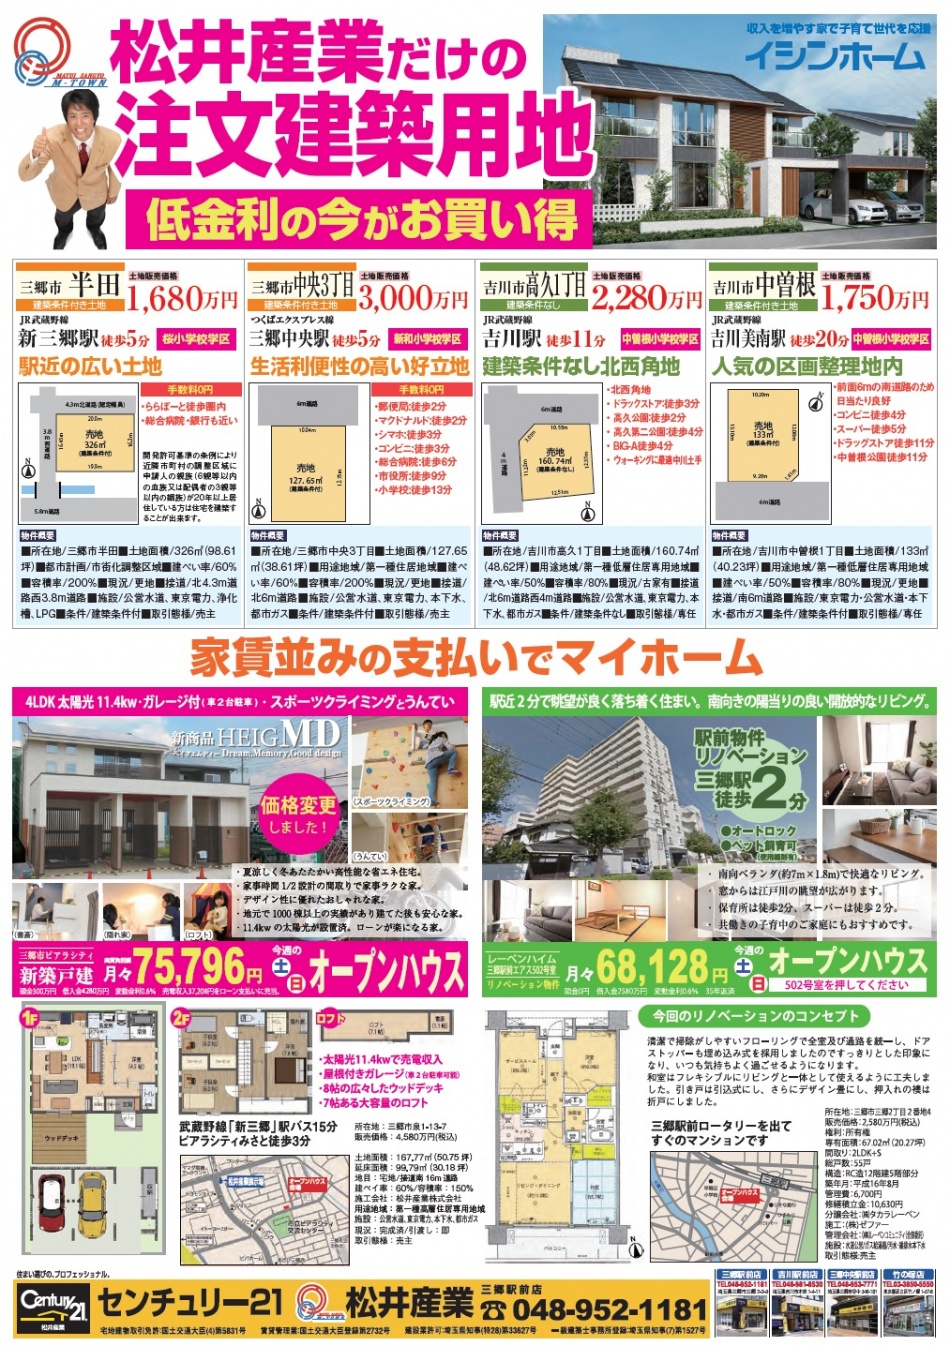 土地情報なら地元の松井産業へ。住宅でも多くのお客様にご満足いただいています。